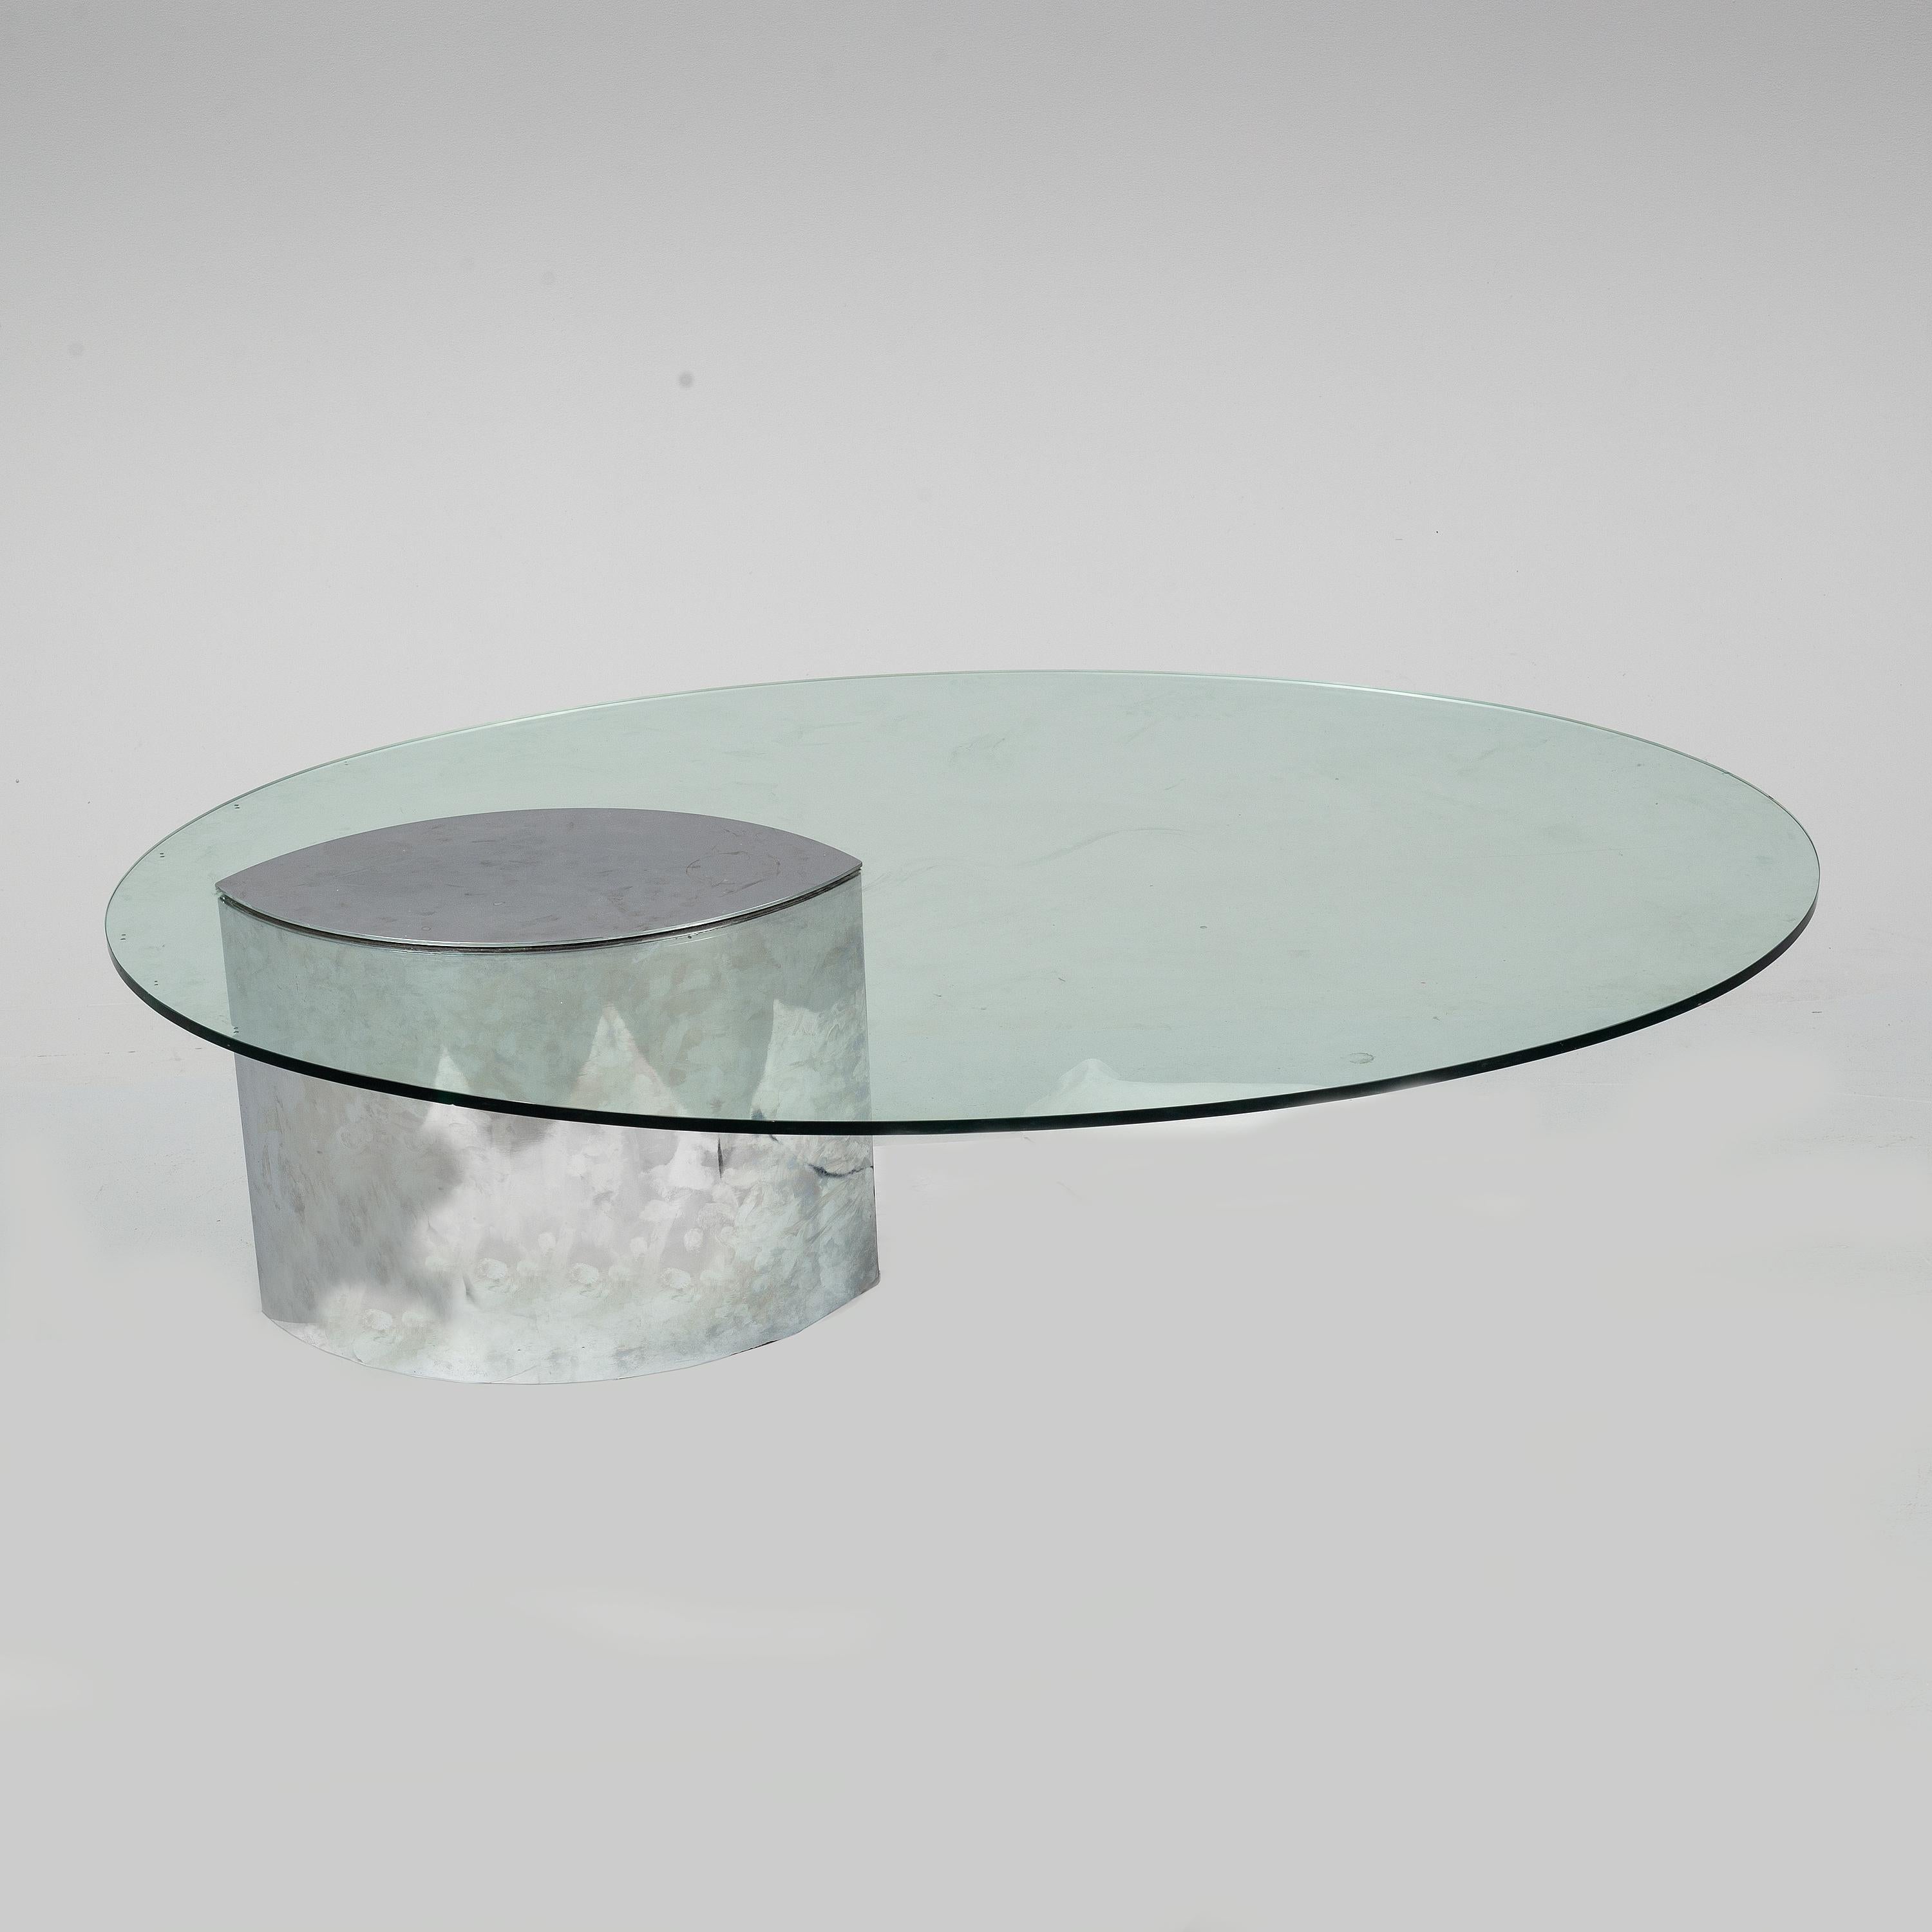 Der Lunario Couchtisch von Knoll International hat eine ovale Glasplatte und ein Metallgestell. Er zeichnet sich durch sein asymmetrisches Erscheinungsbild und sein schlichtes und zeitloses Design aus.

Vintage By Zustand 

Kleiner Chromverlust am